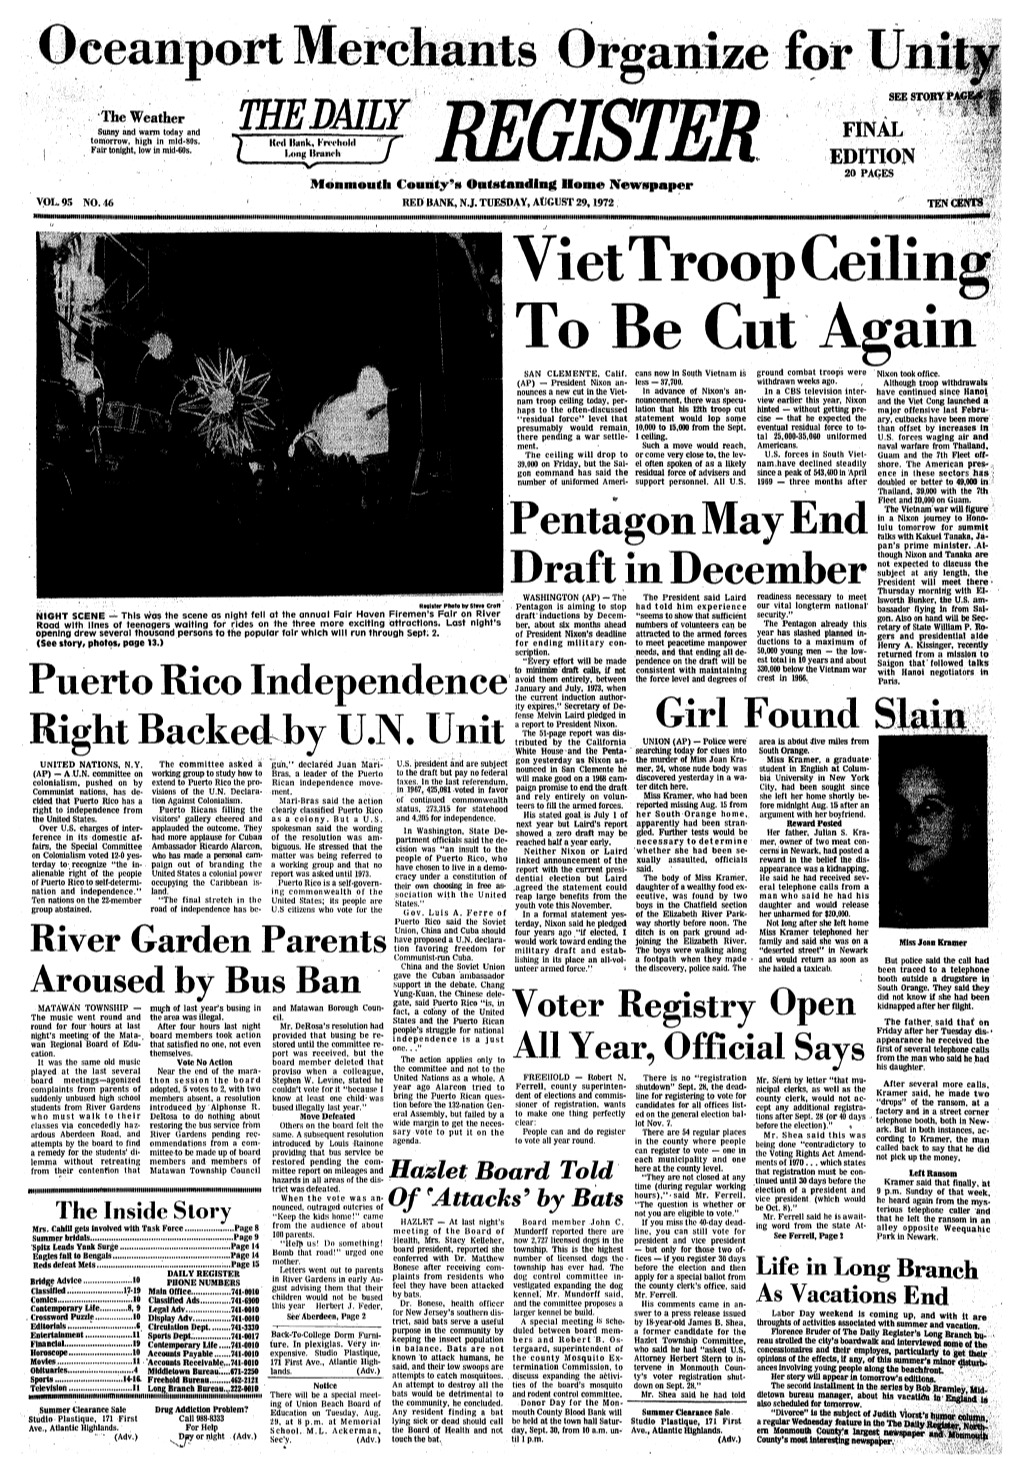 Viet Troop Ceiling to Be Cut Again